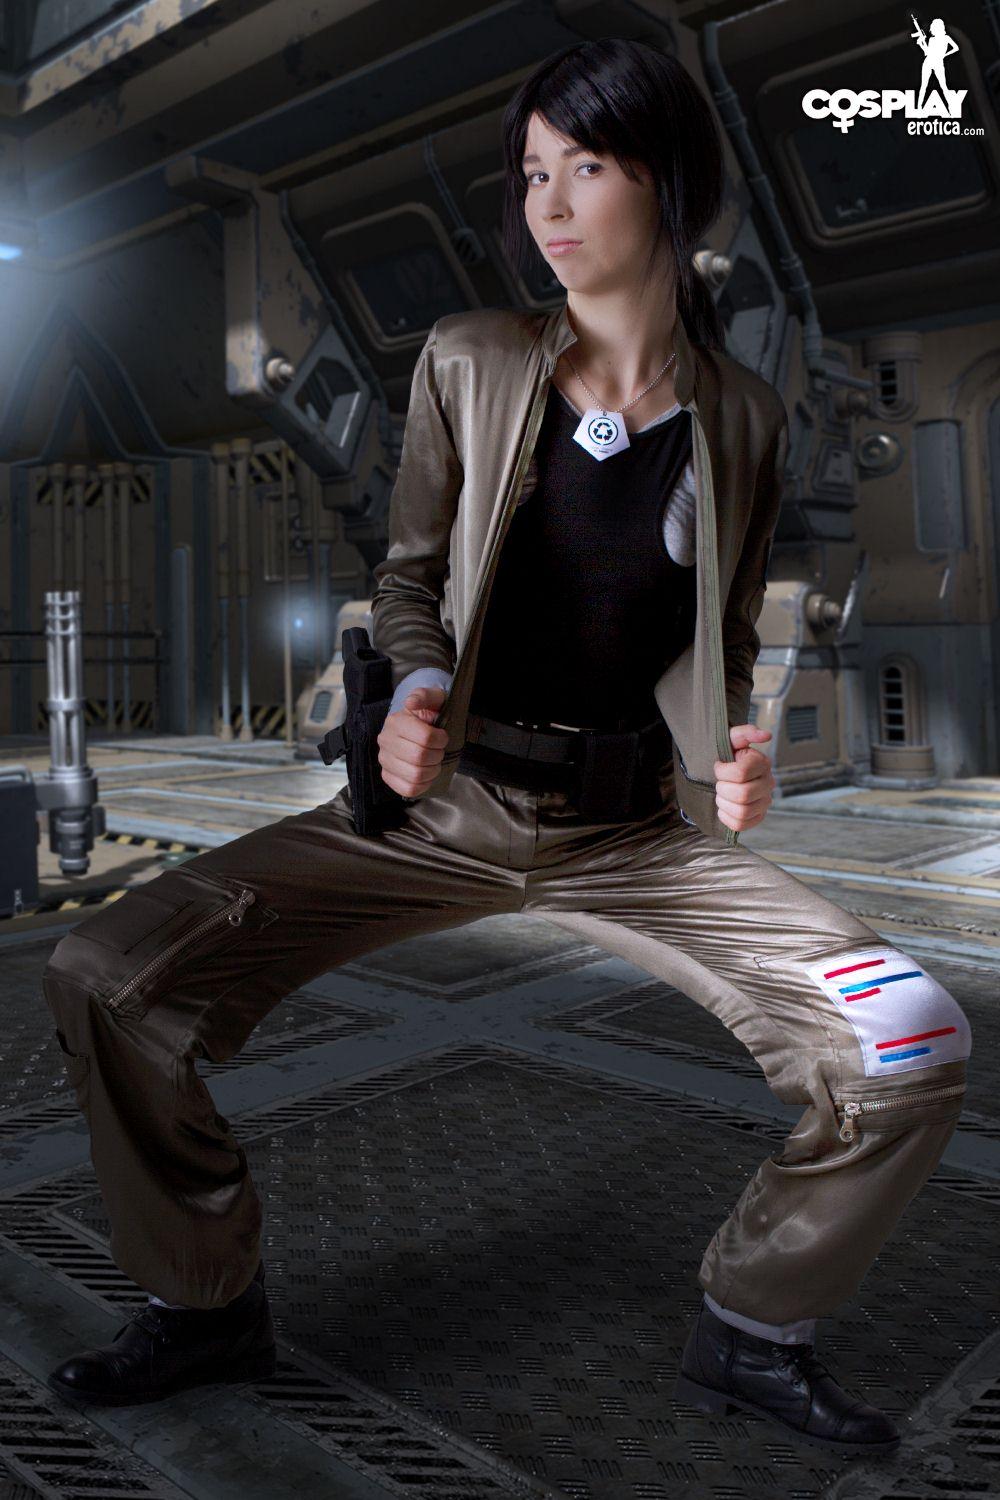 Immagini di stacy cosplayer caldo vestito per dovere su battlestar galactica
 #60298249